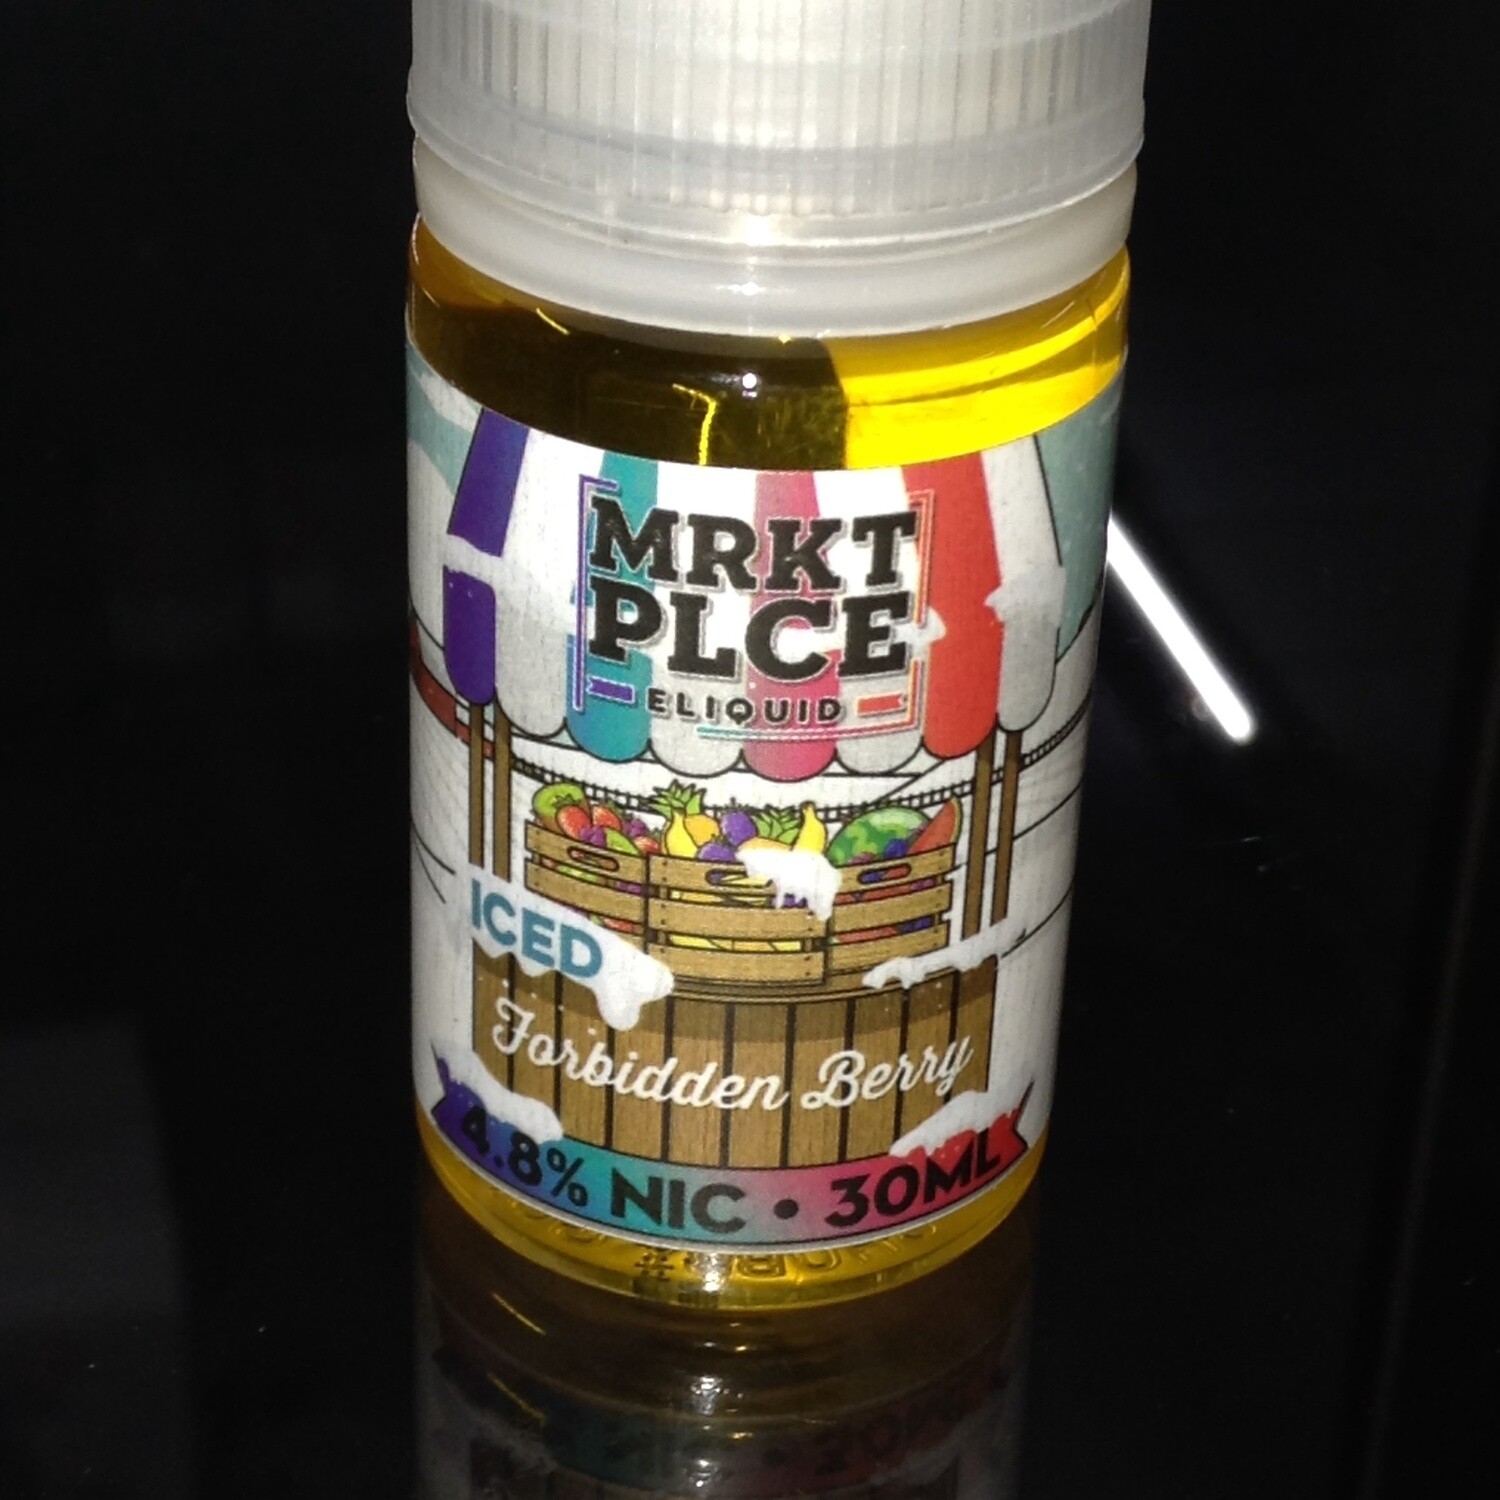 MRKT PLCE Iced Forbidden Berry 48mg Salt Nic